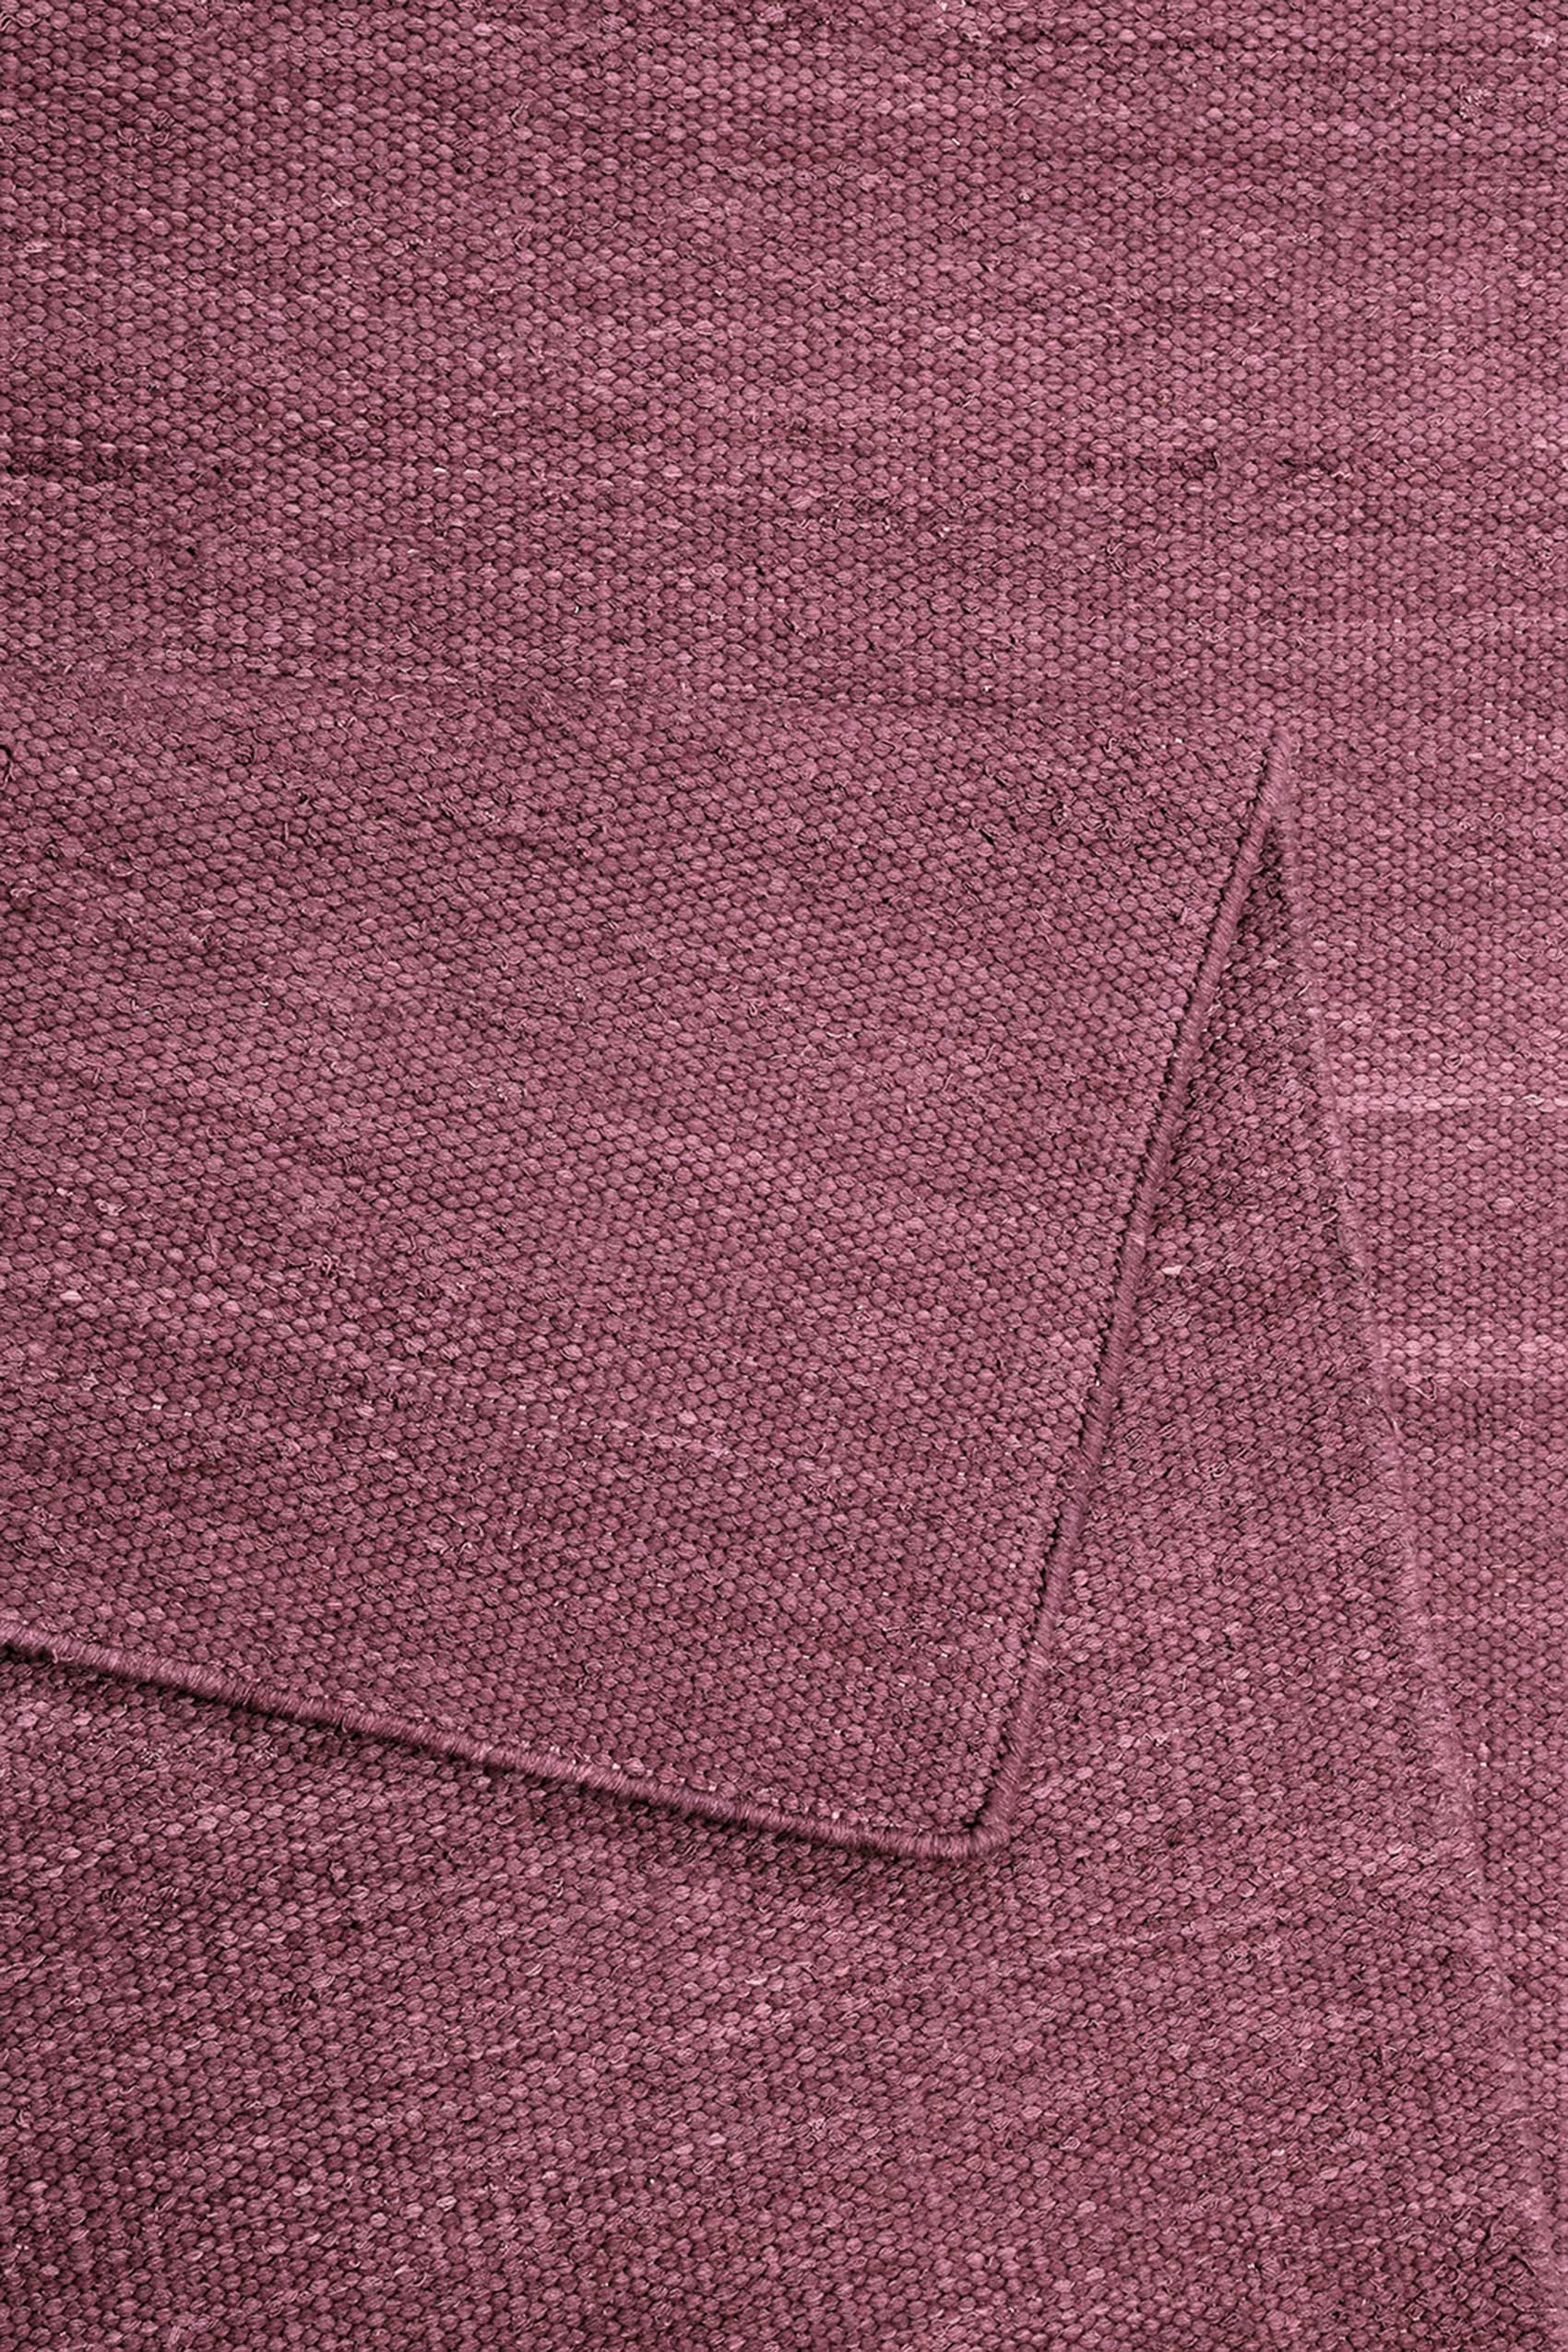 Esprit Kurzflor Teppich Flieder Rot aus Baumwolle » Rainbow Kelim « - Ansicht 3